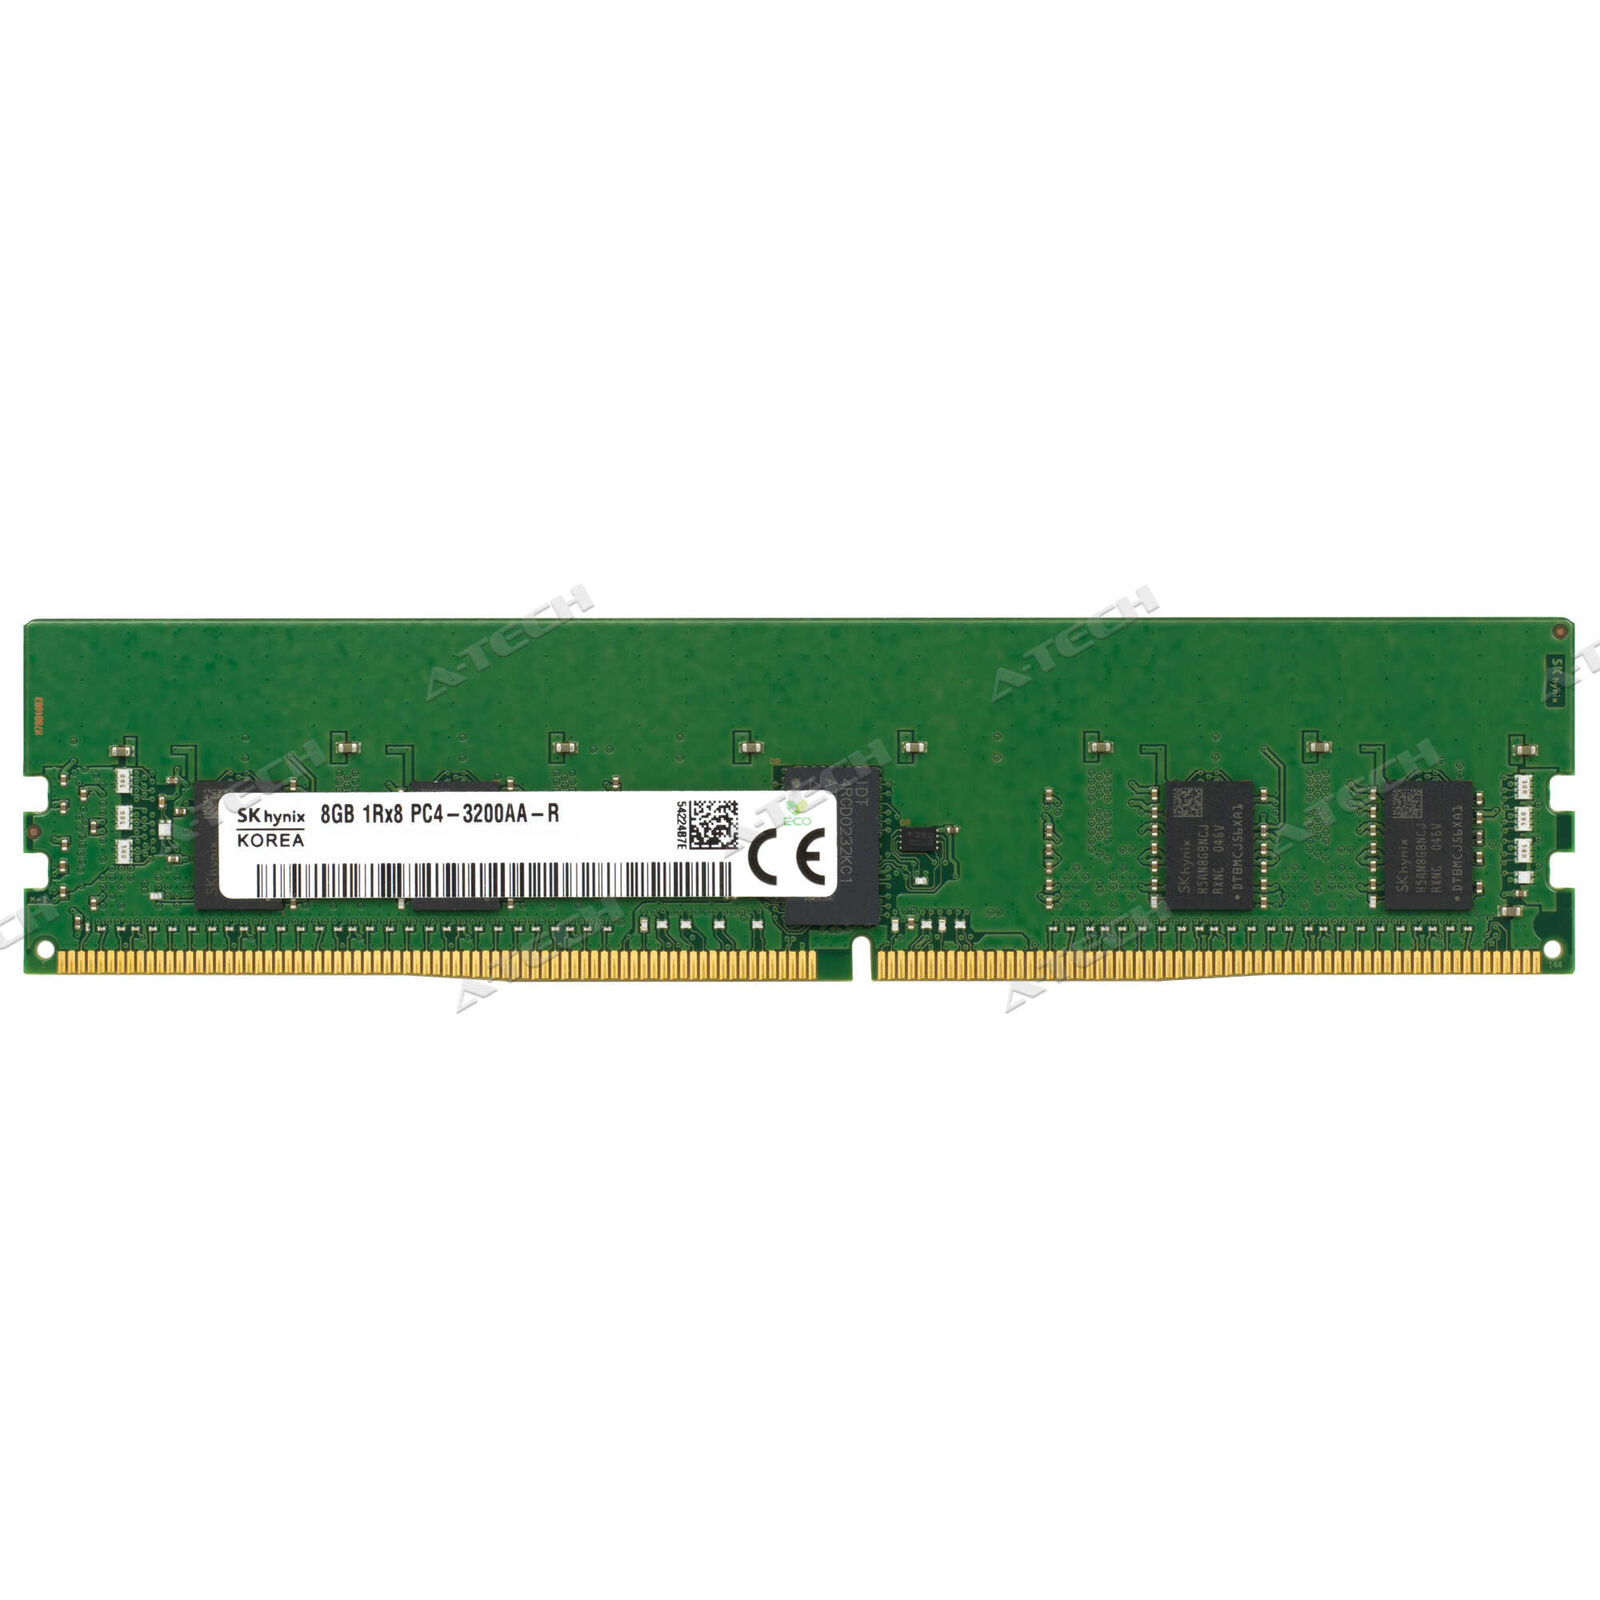 Hynix 8GB DDR4-3200 RDIMM HMA81GR7CJR8N-XN Server Memory RAM